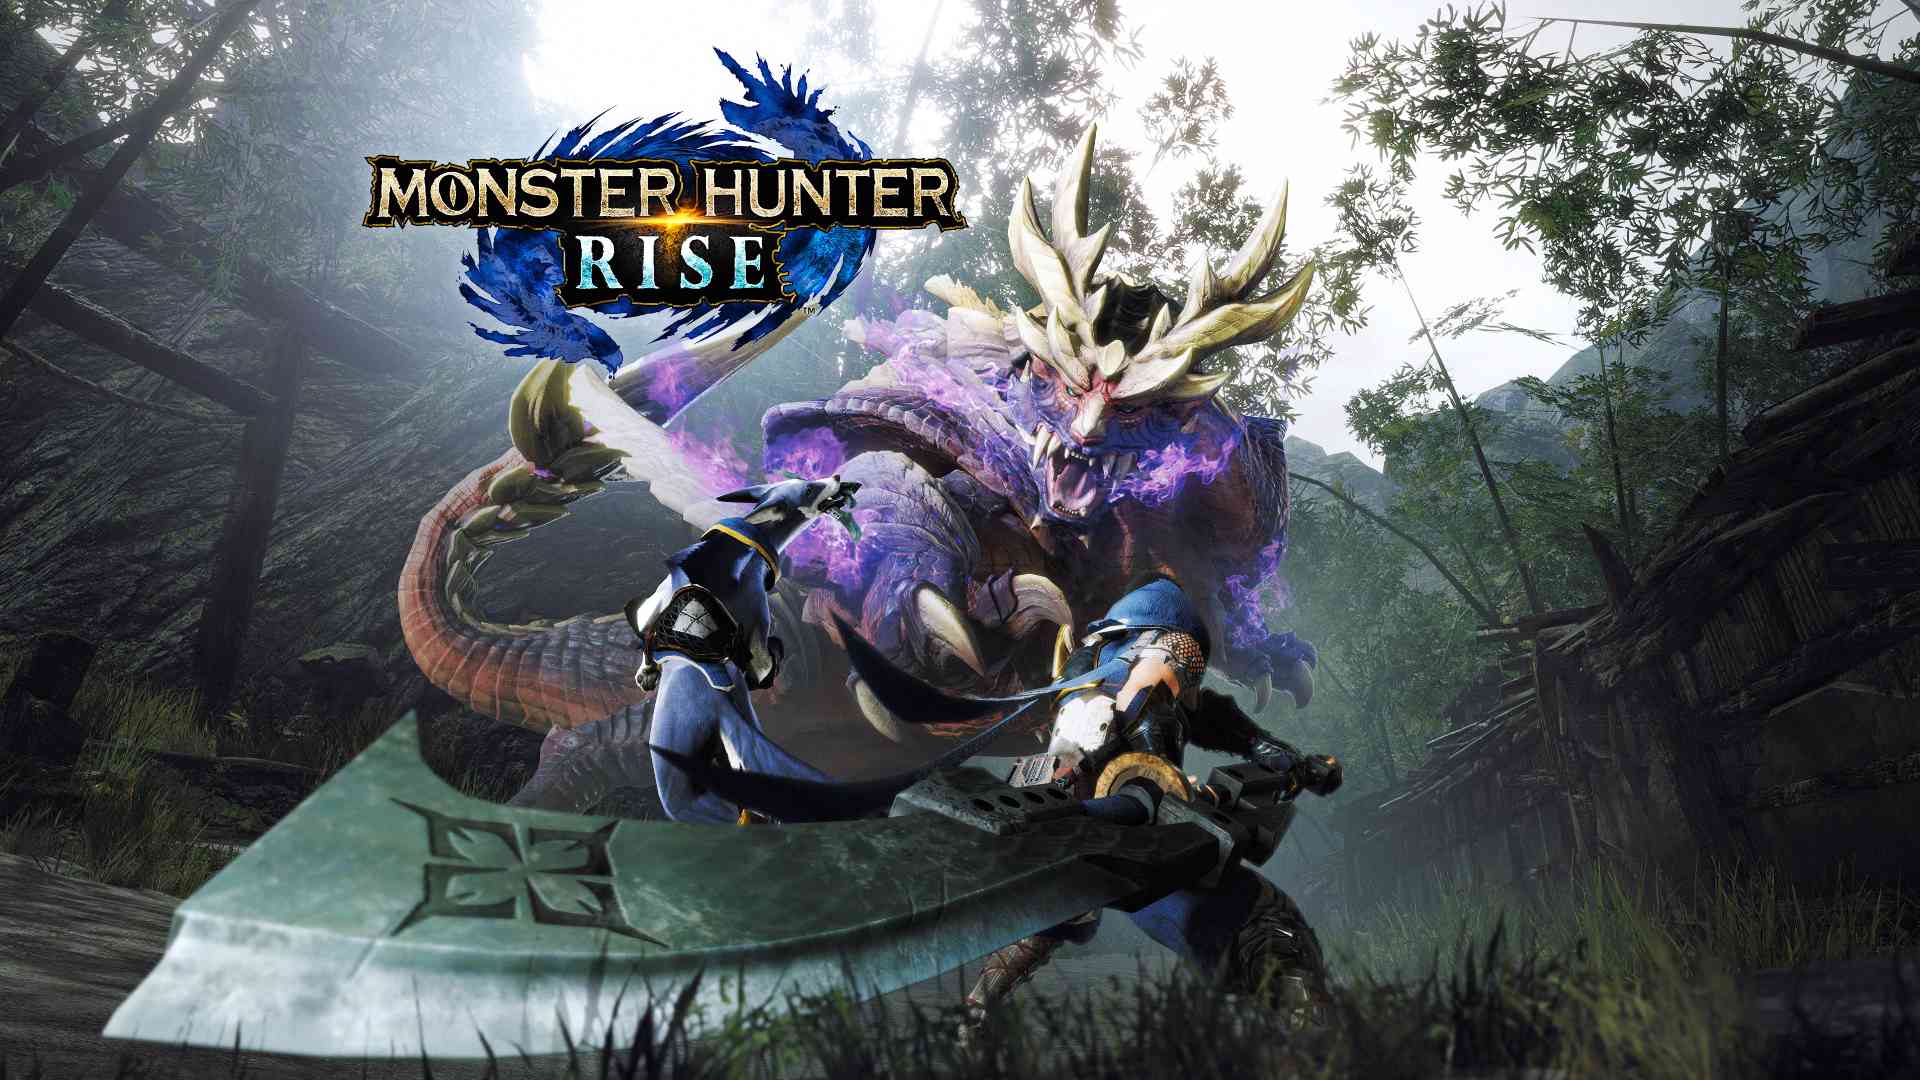 Monster Hunter Rise: PC vs Switch Comparison